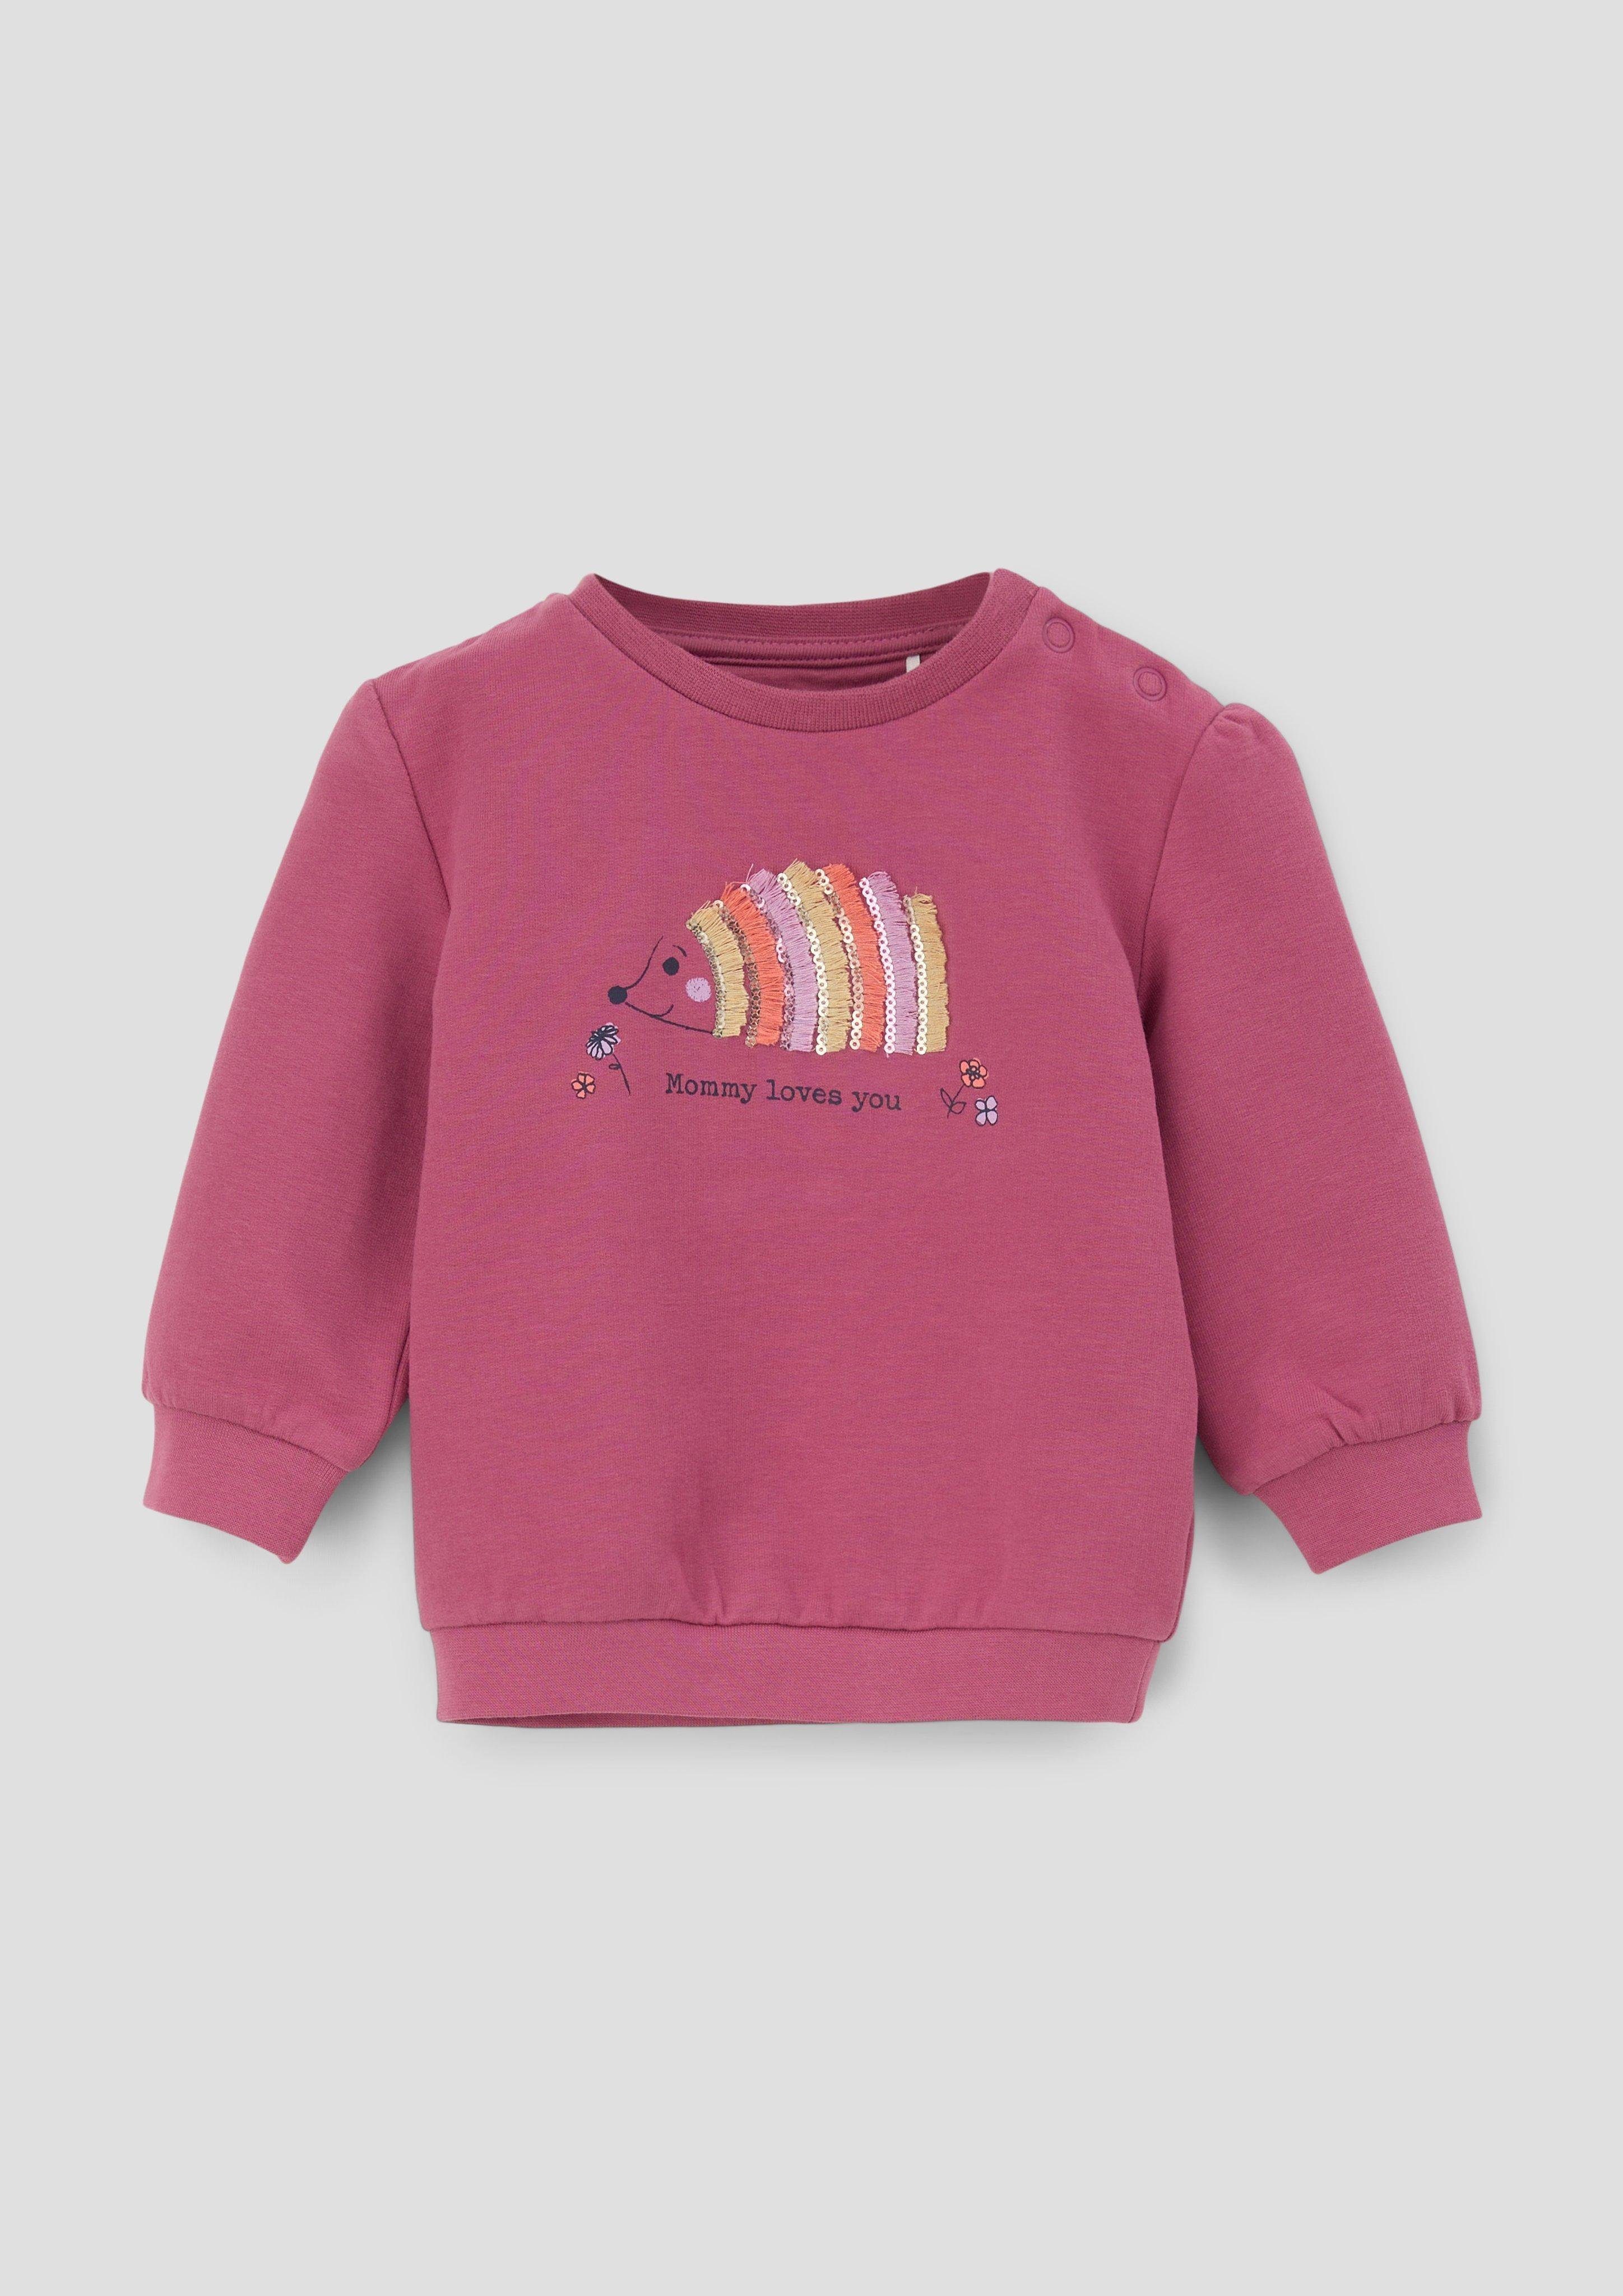 s.Oliver Sweatshirt Sweater mit Frontprint Fransen, Pailletten, Raffung pink